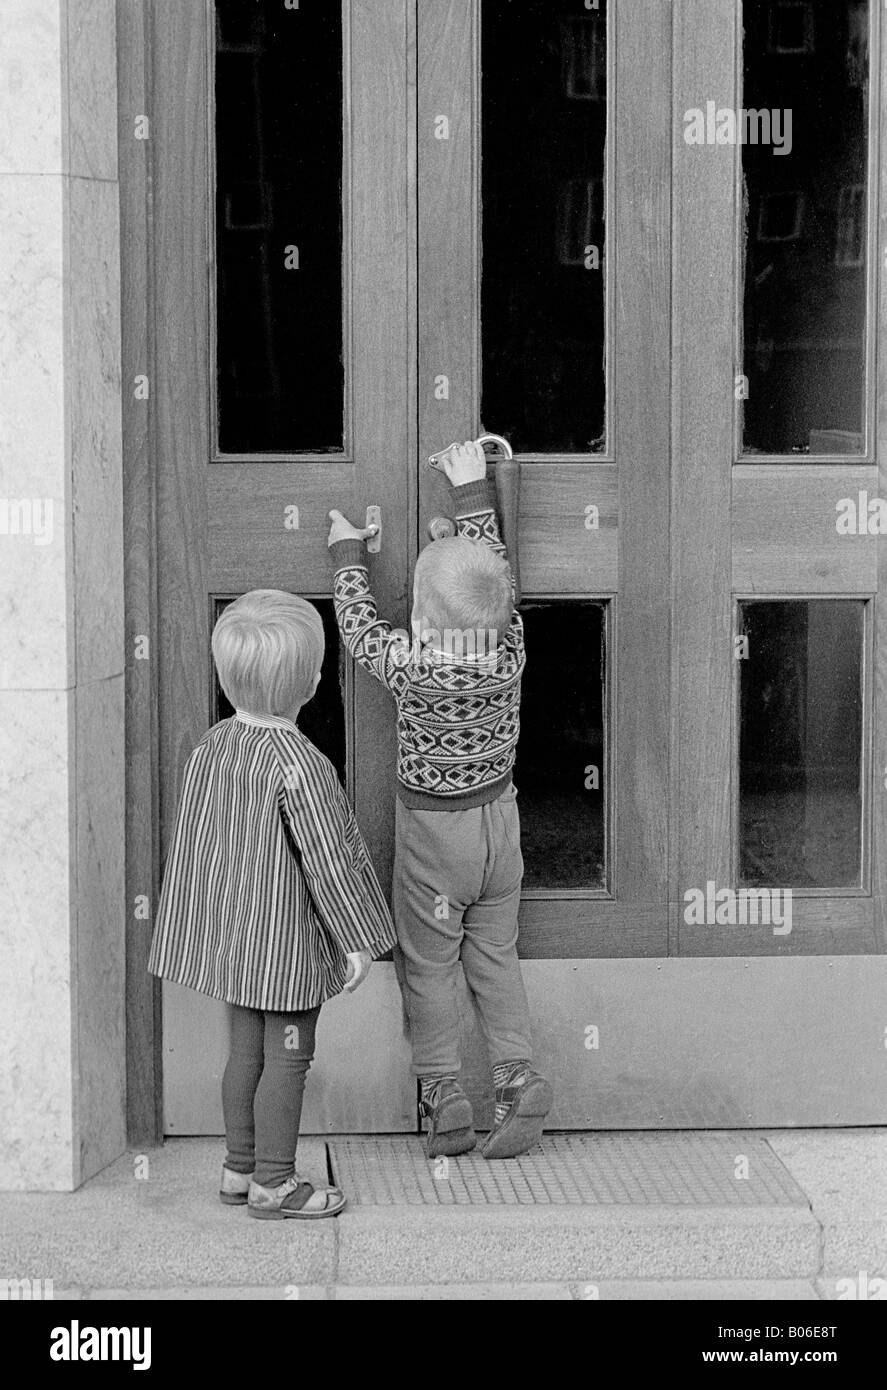 Ringing the door bell Stock Photo